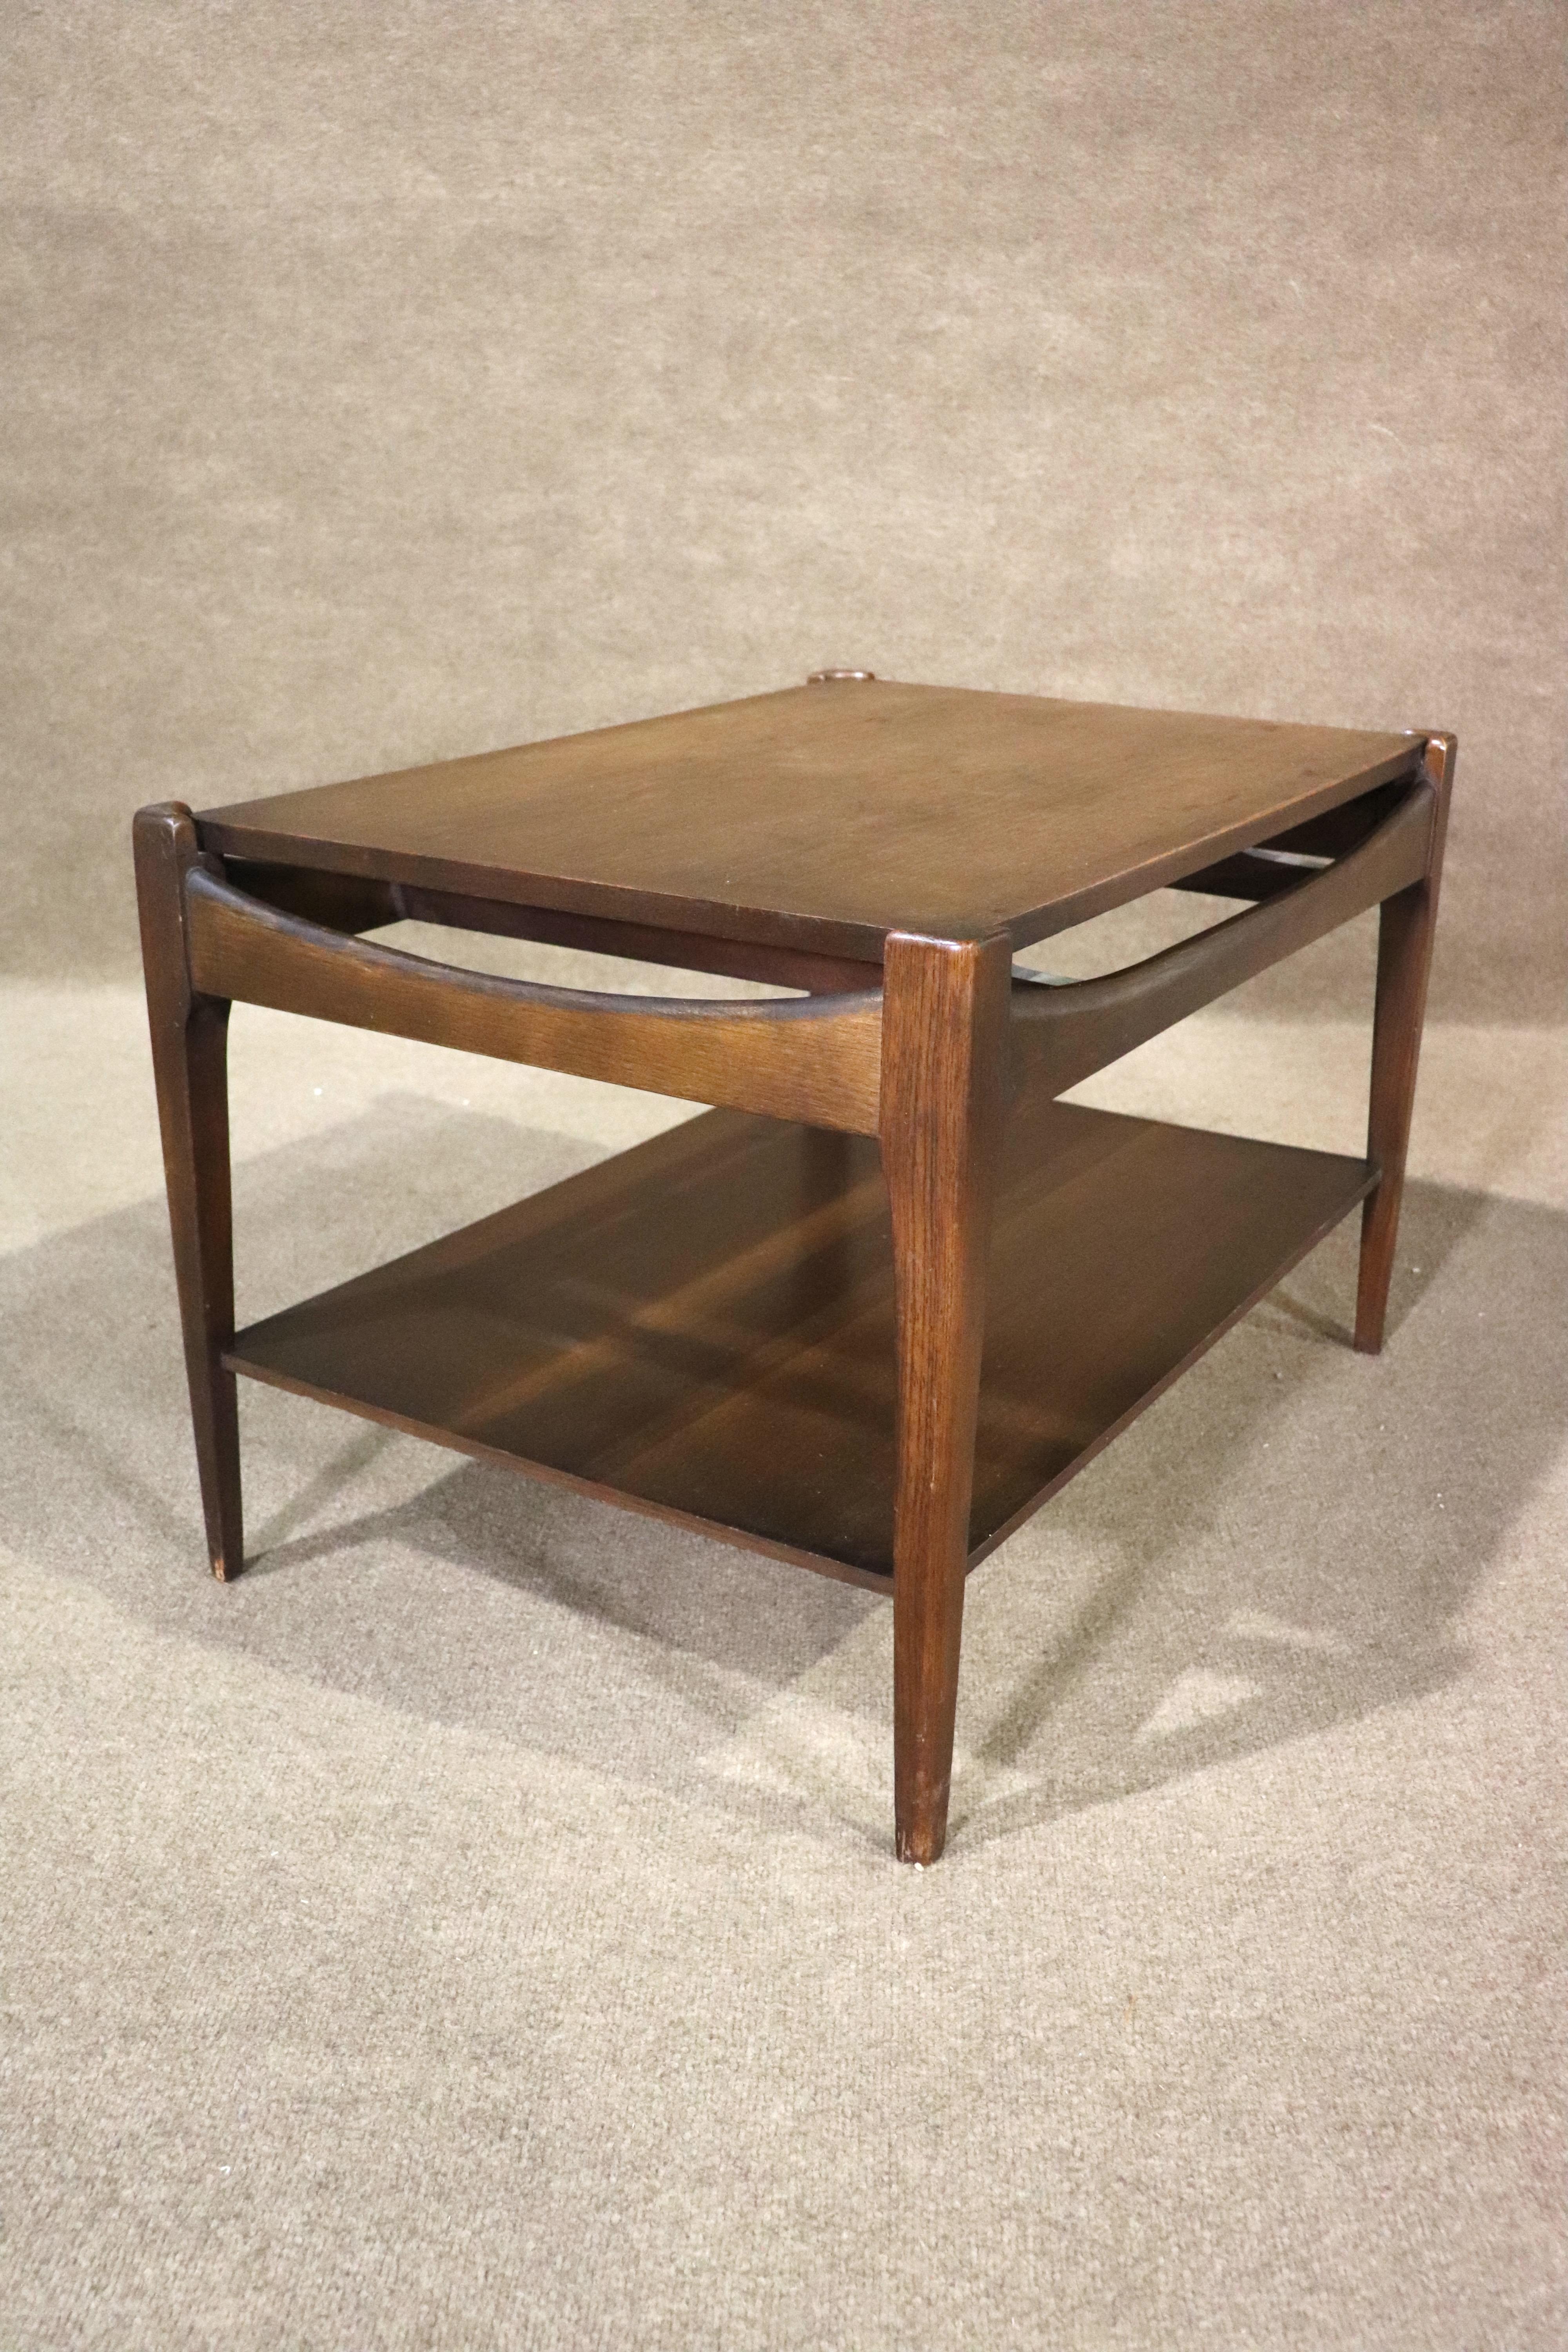 Ein Paar zweistöckige Tische von Bassett Furniture. Mid-Century-Design mit geschwungenem Rahmen und konischen Beinen.
Bitte bestätigen Sie den Standort NY oder NJ